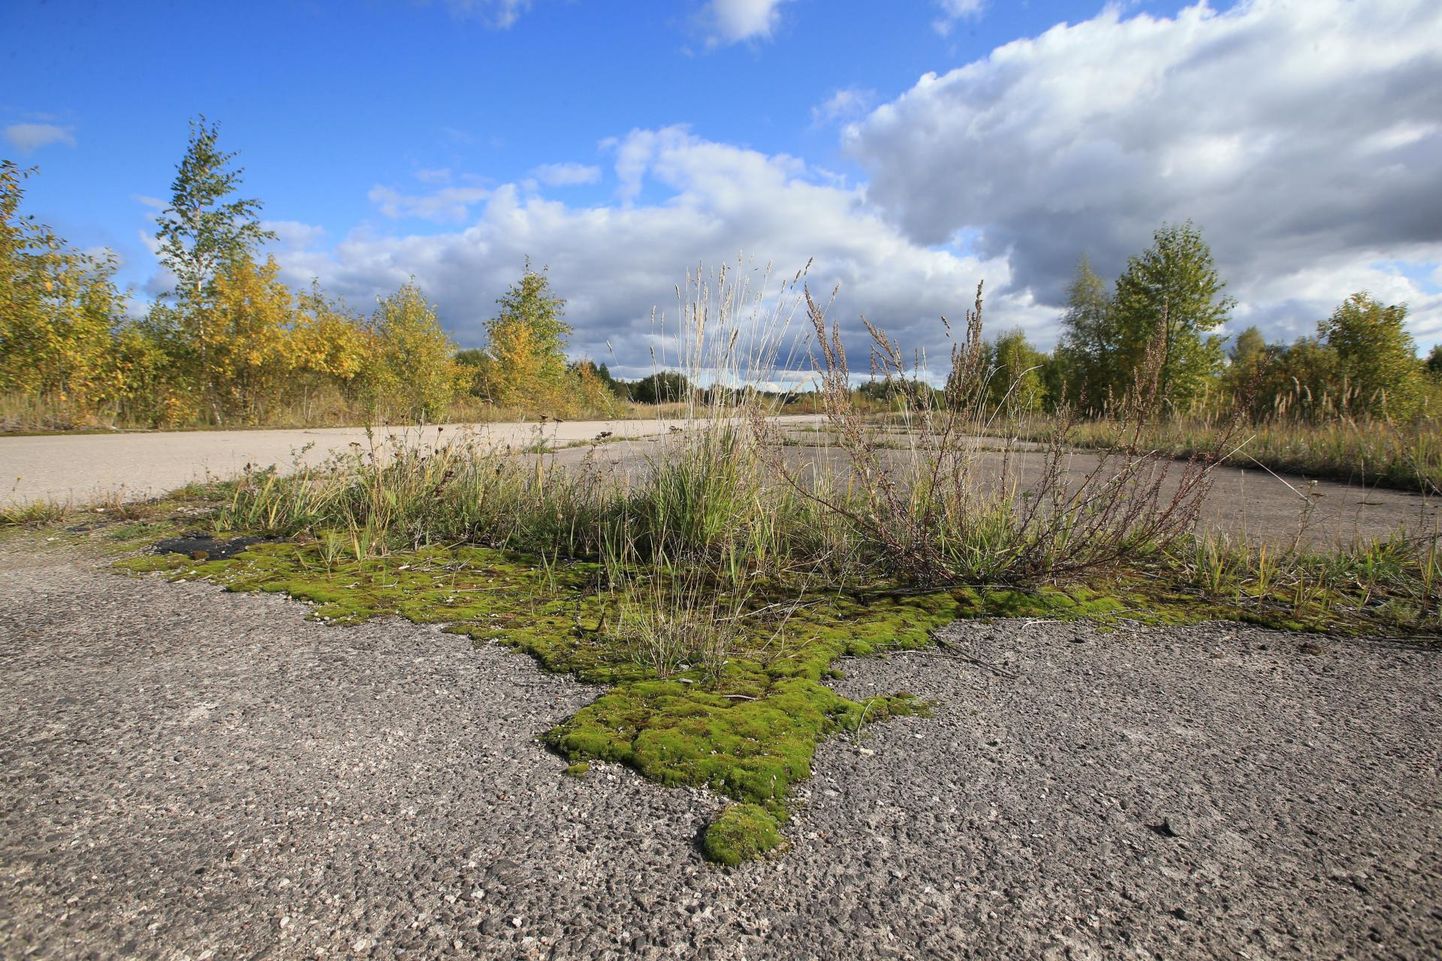 Suurem osa Raadi vanast sõjalennuväljast on 1992. aastast kasutuseta seisnud. Tartu vald soovib konkursiga endise ruleerimisraja ehk nüüd Ermi nime kandvale tänavale leida uut väljanägemist.